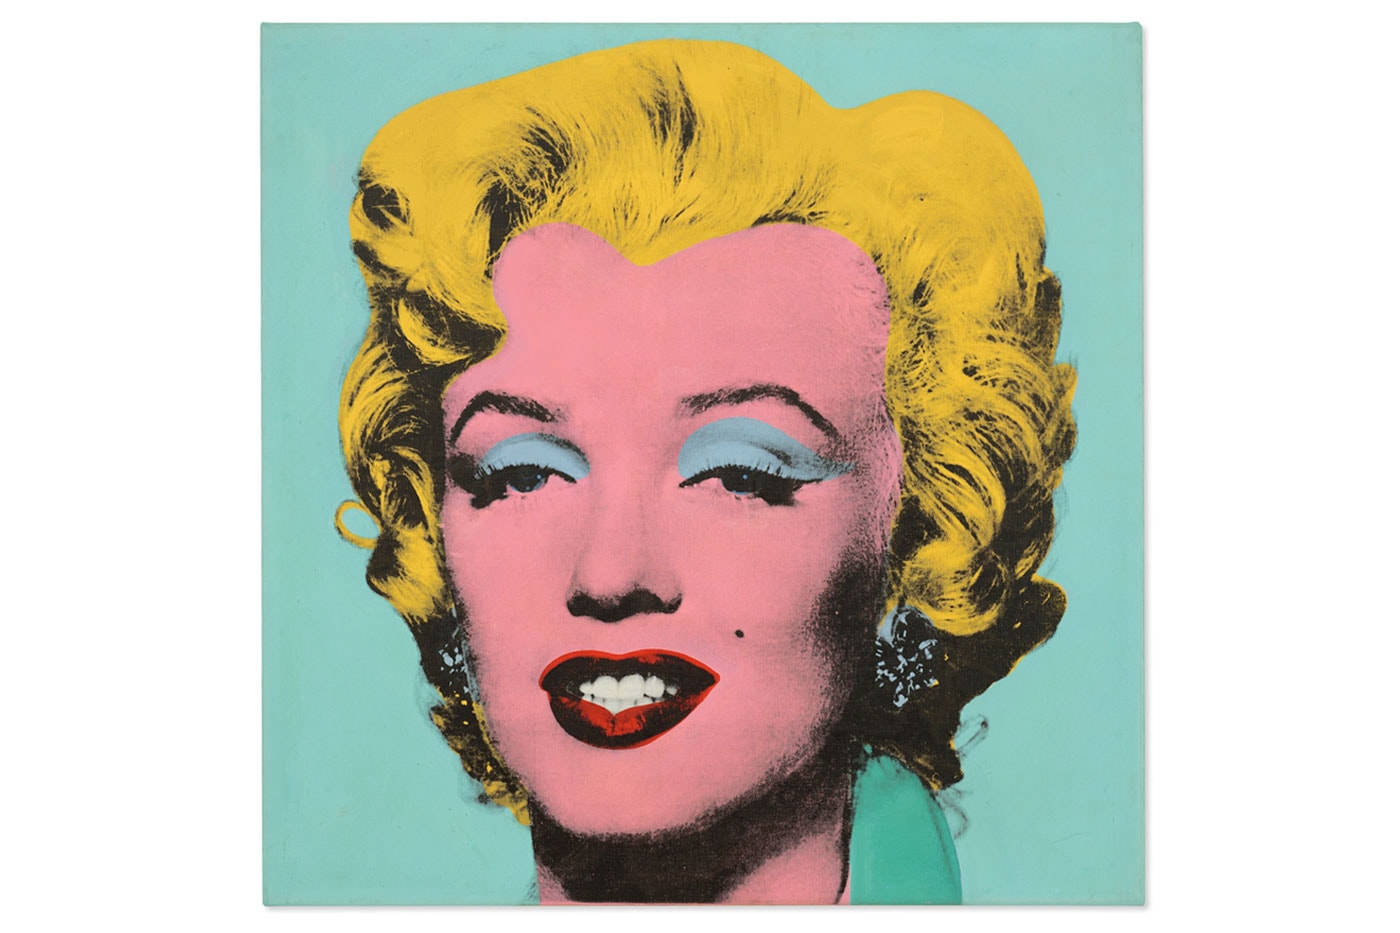 アンディ・ウォーホルの描いたマリリン・モンローの肖像画が史上最高の250億円超えで落札 Andy Warhol's Marilyn Monroe Painting Sold for Record-Breaking $195 Million USD Shot Sage Blue Marilyn christie's auction nyc silk screen contemporary 20th-century art